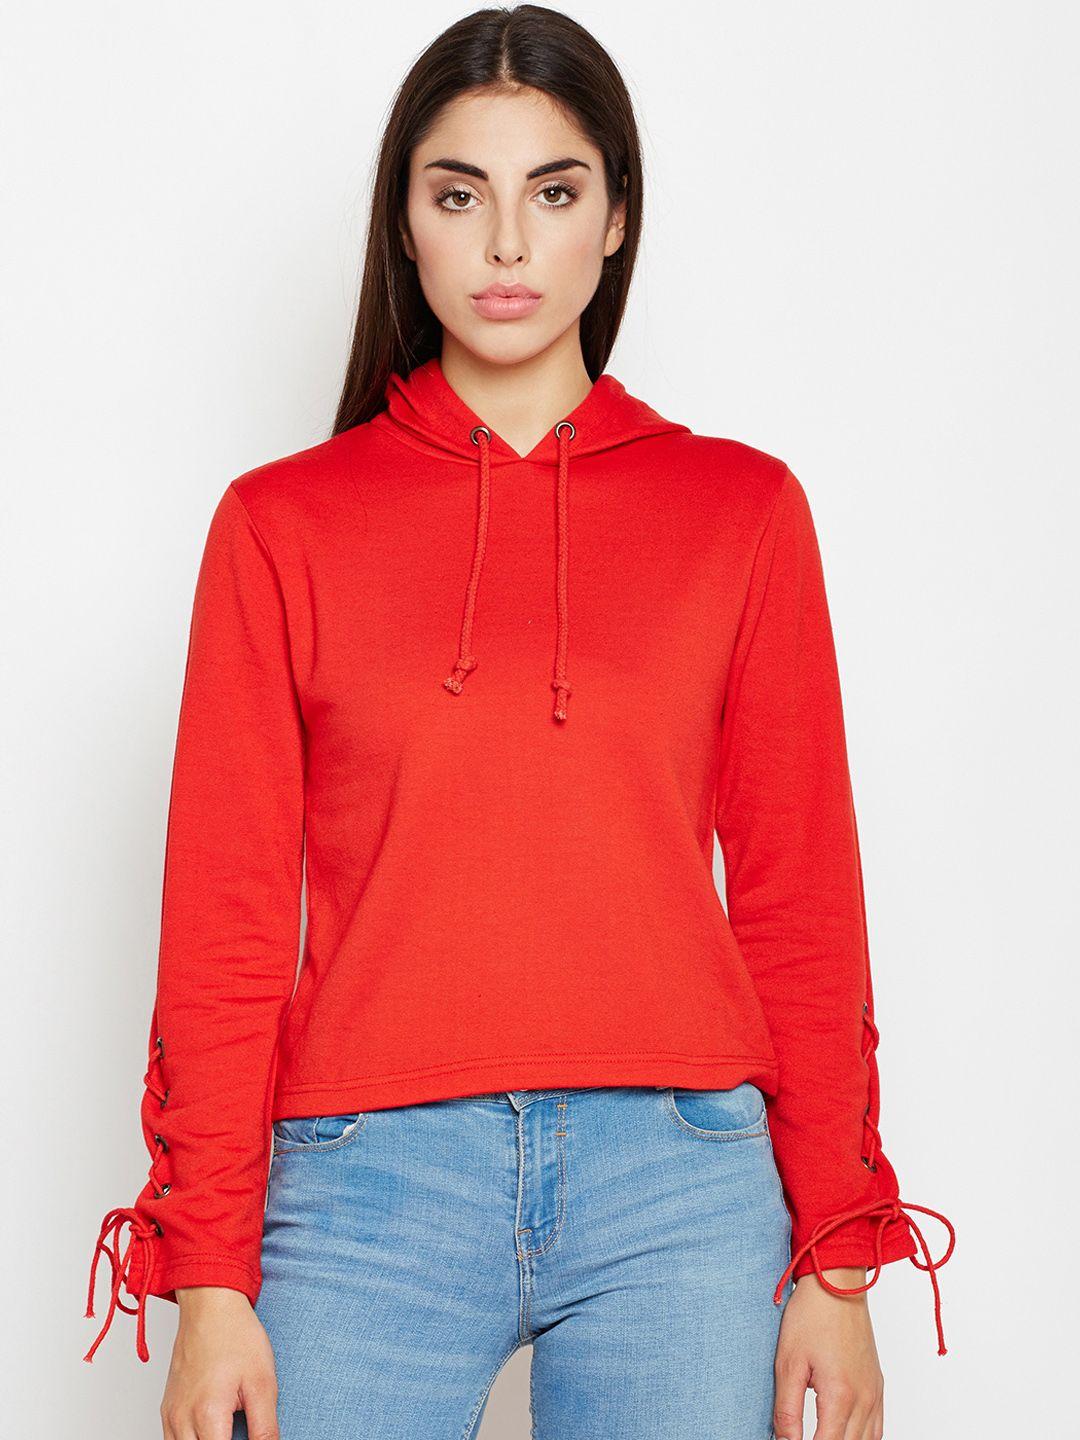 oxolloxo women red solid hooded sweatshirt